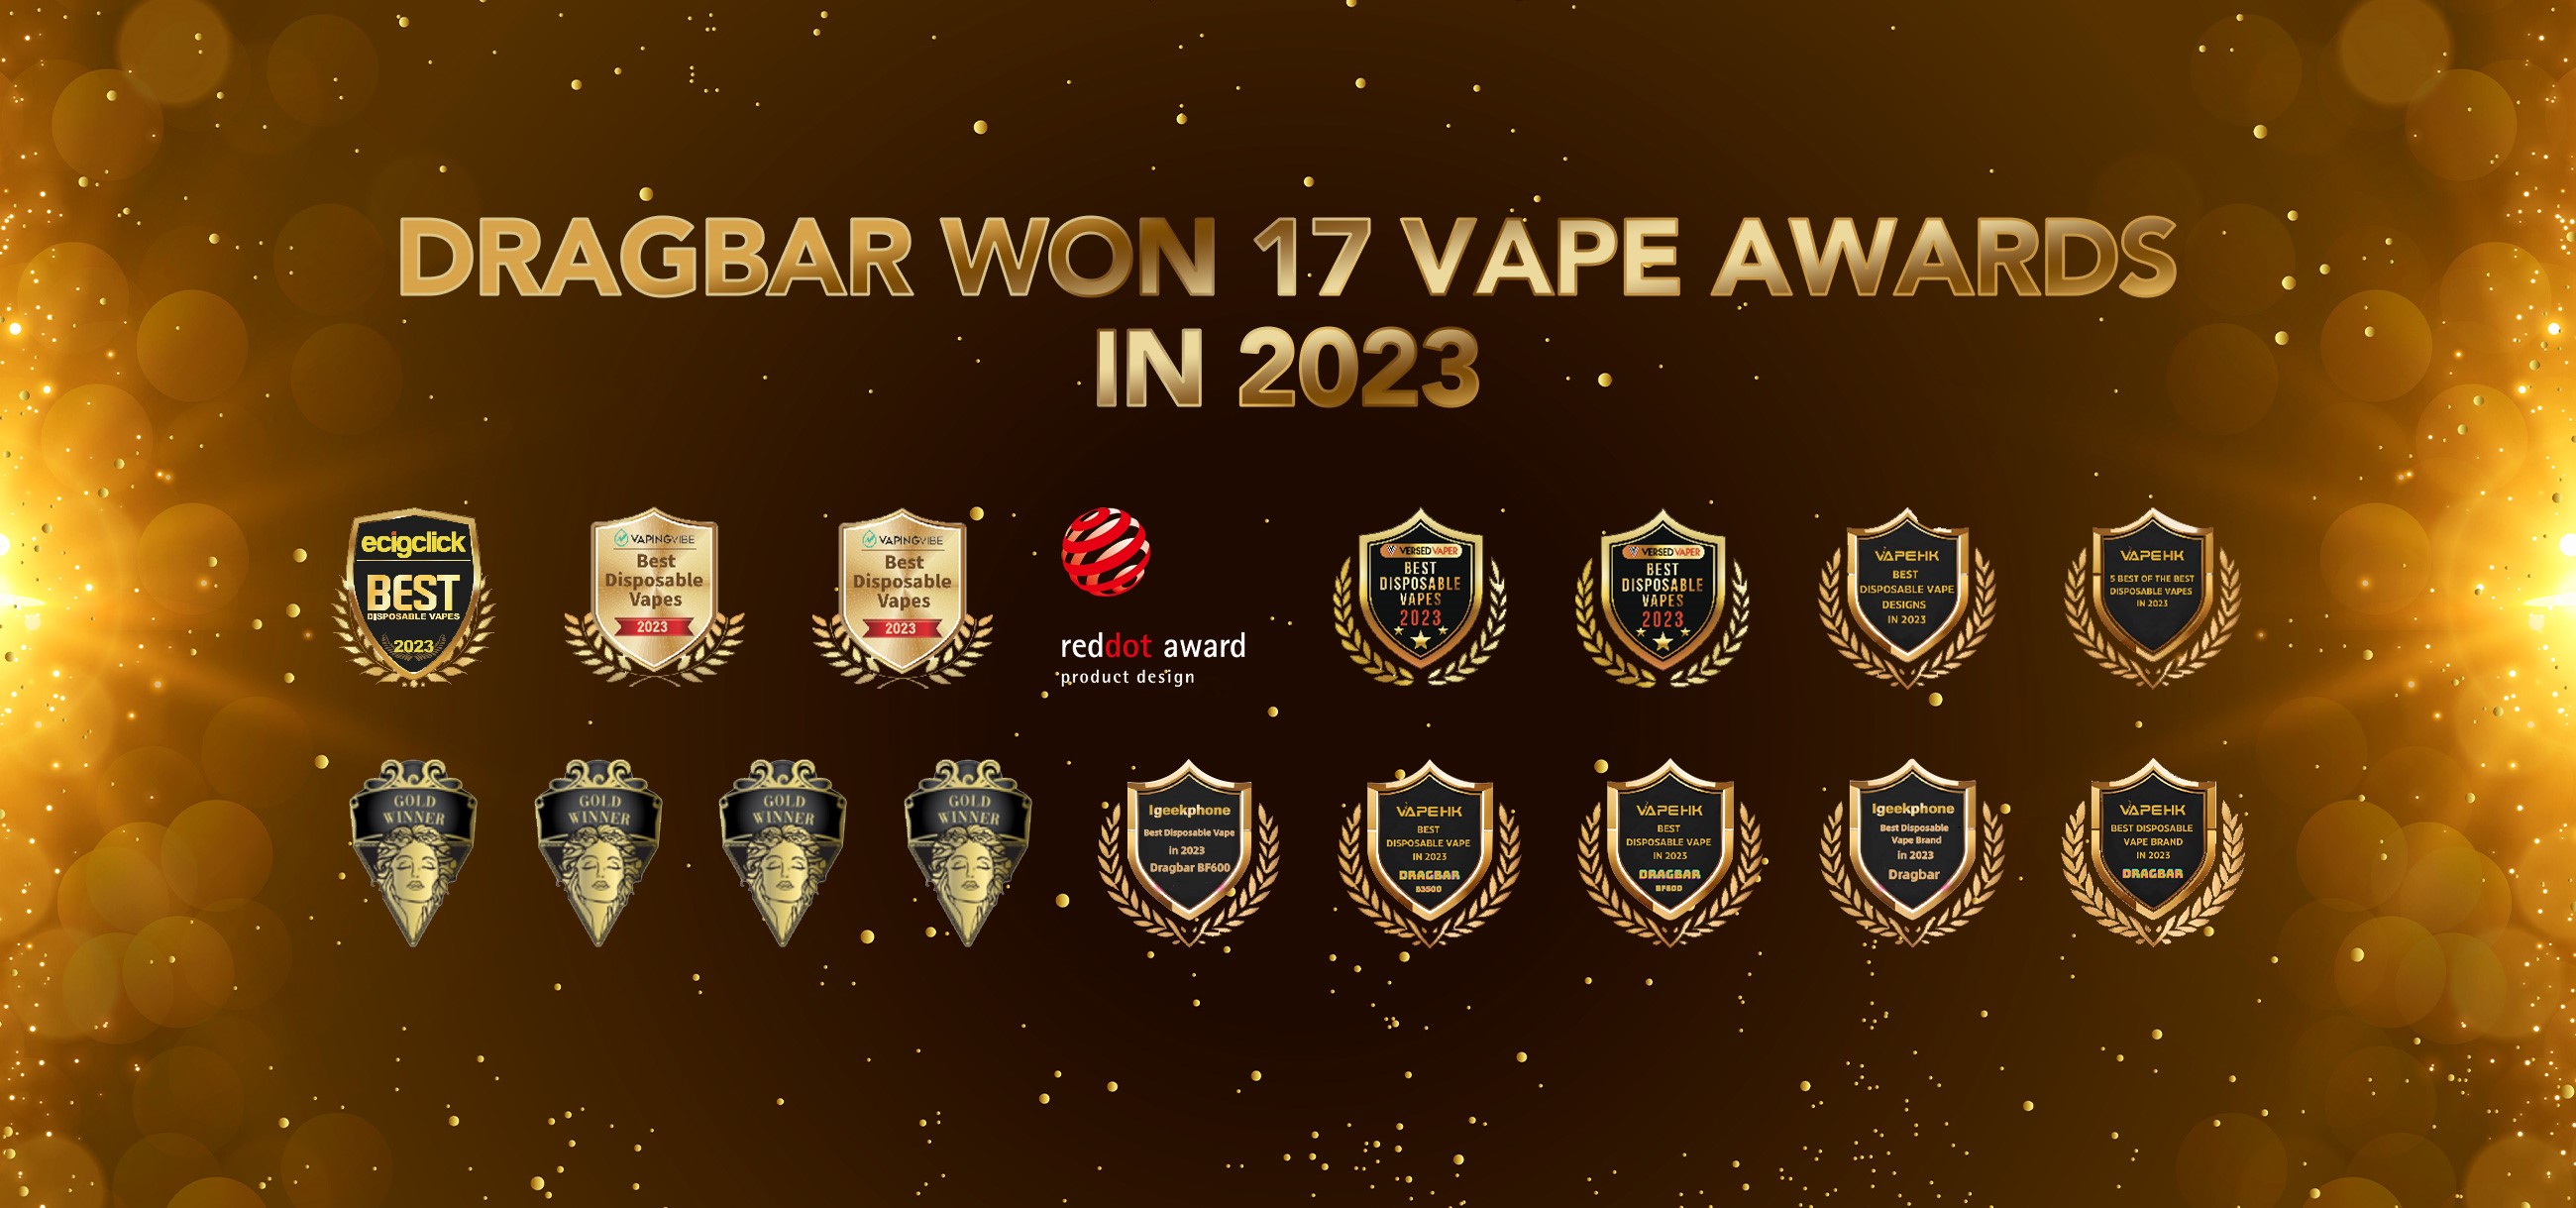 фото: Стремясь стать лидером, DRAGBAR завоевал 17 vape-наград в 2023 году!